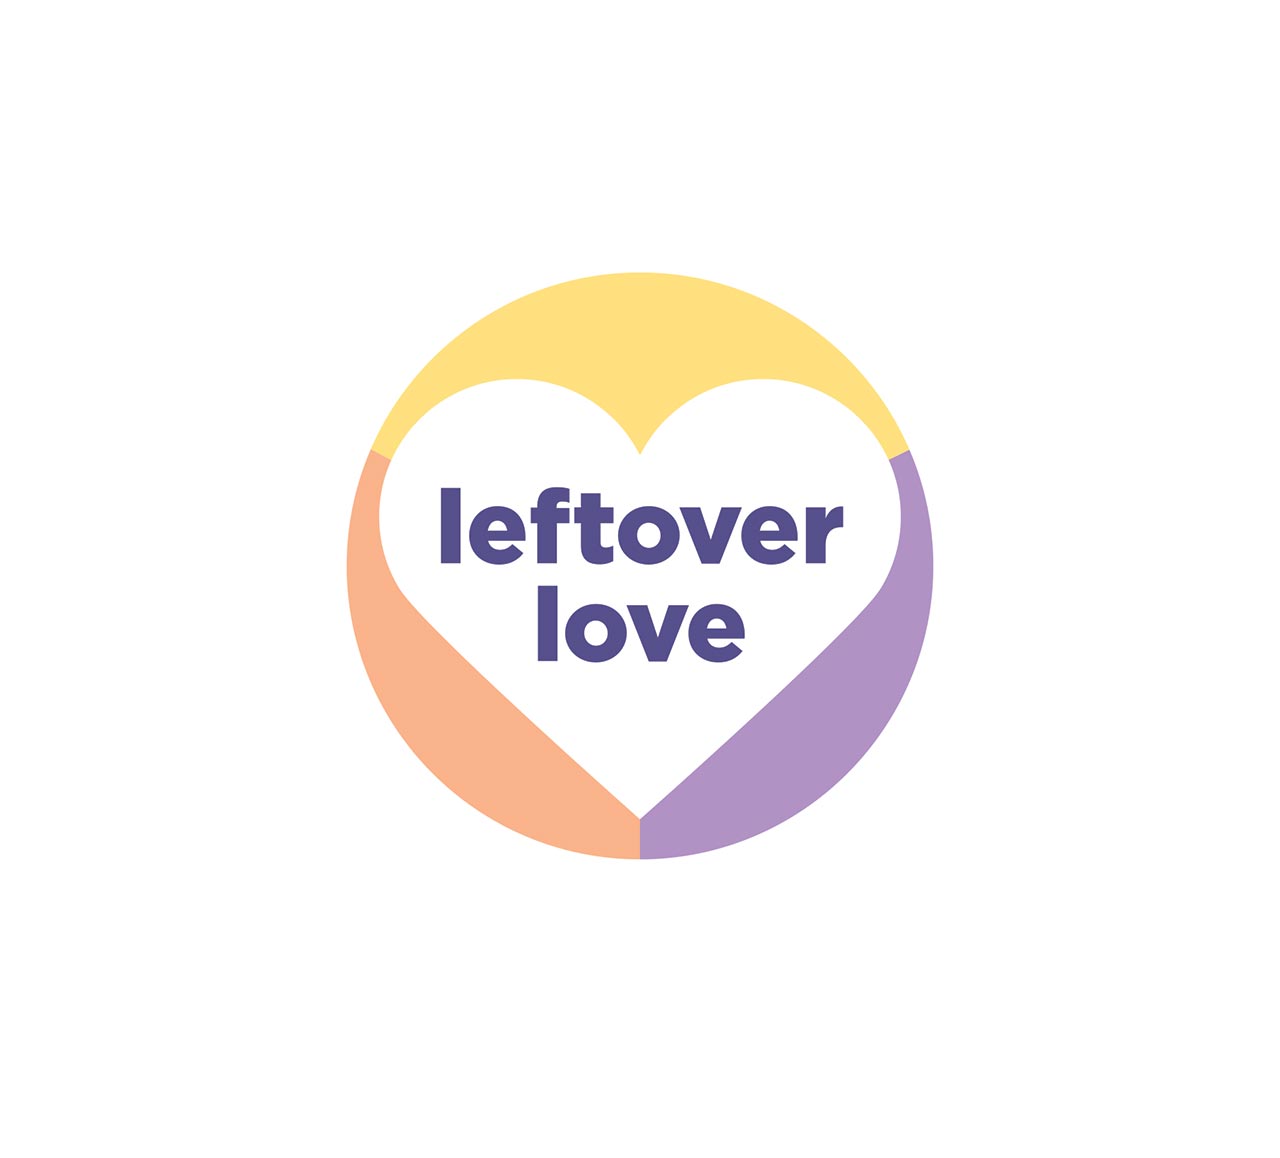 leftover love